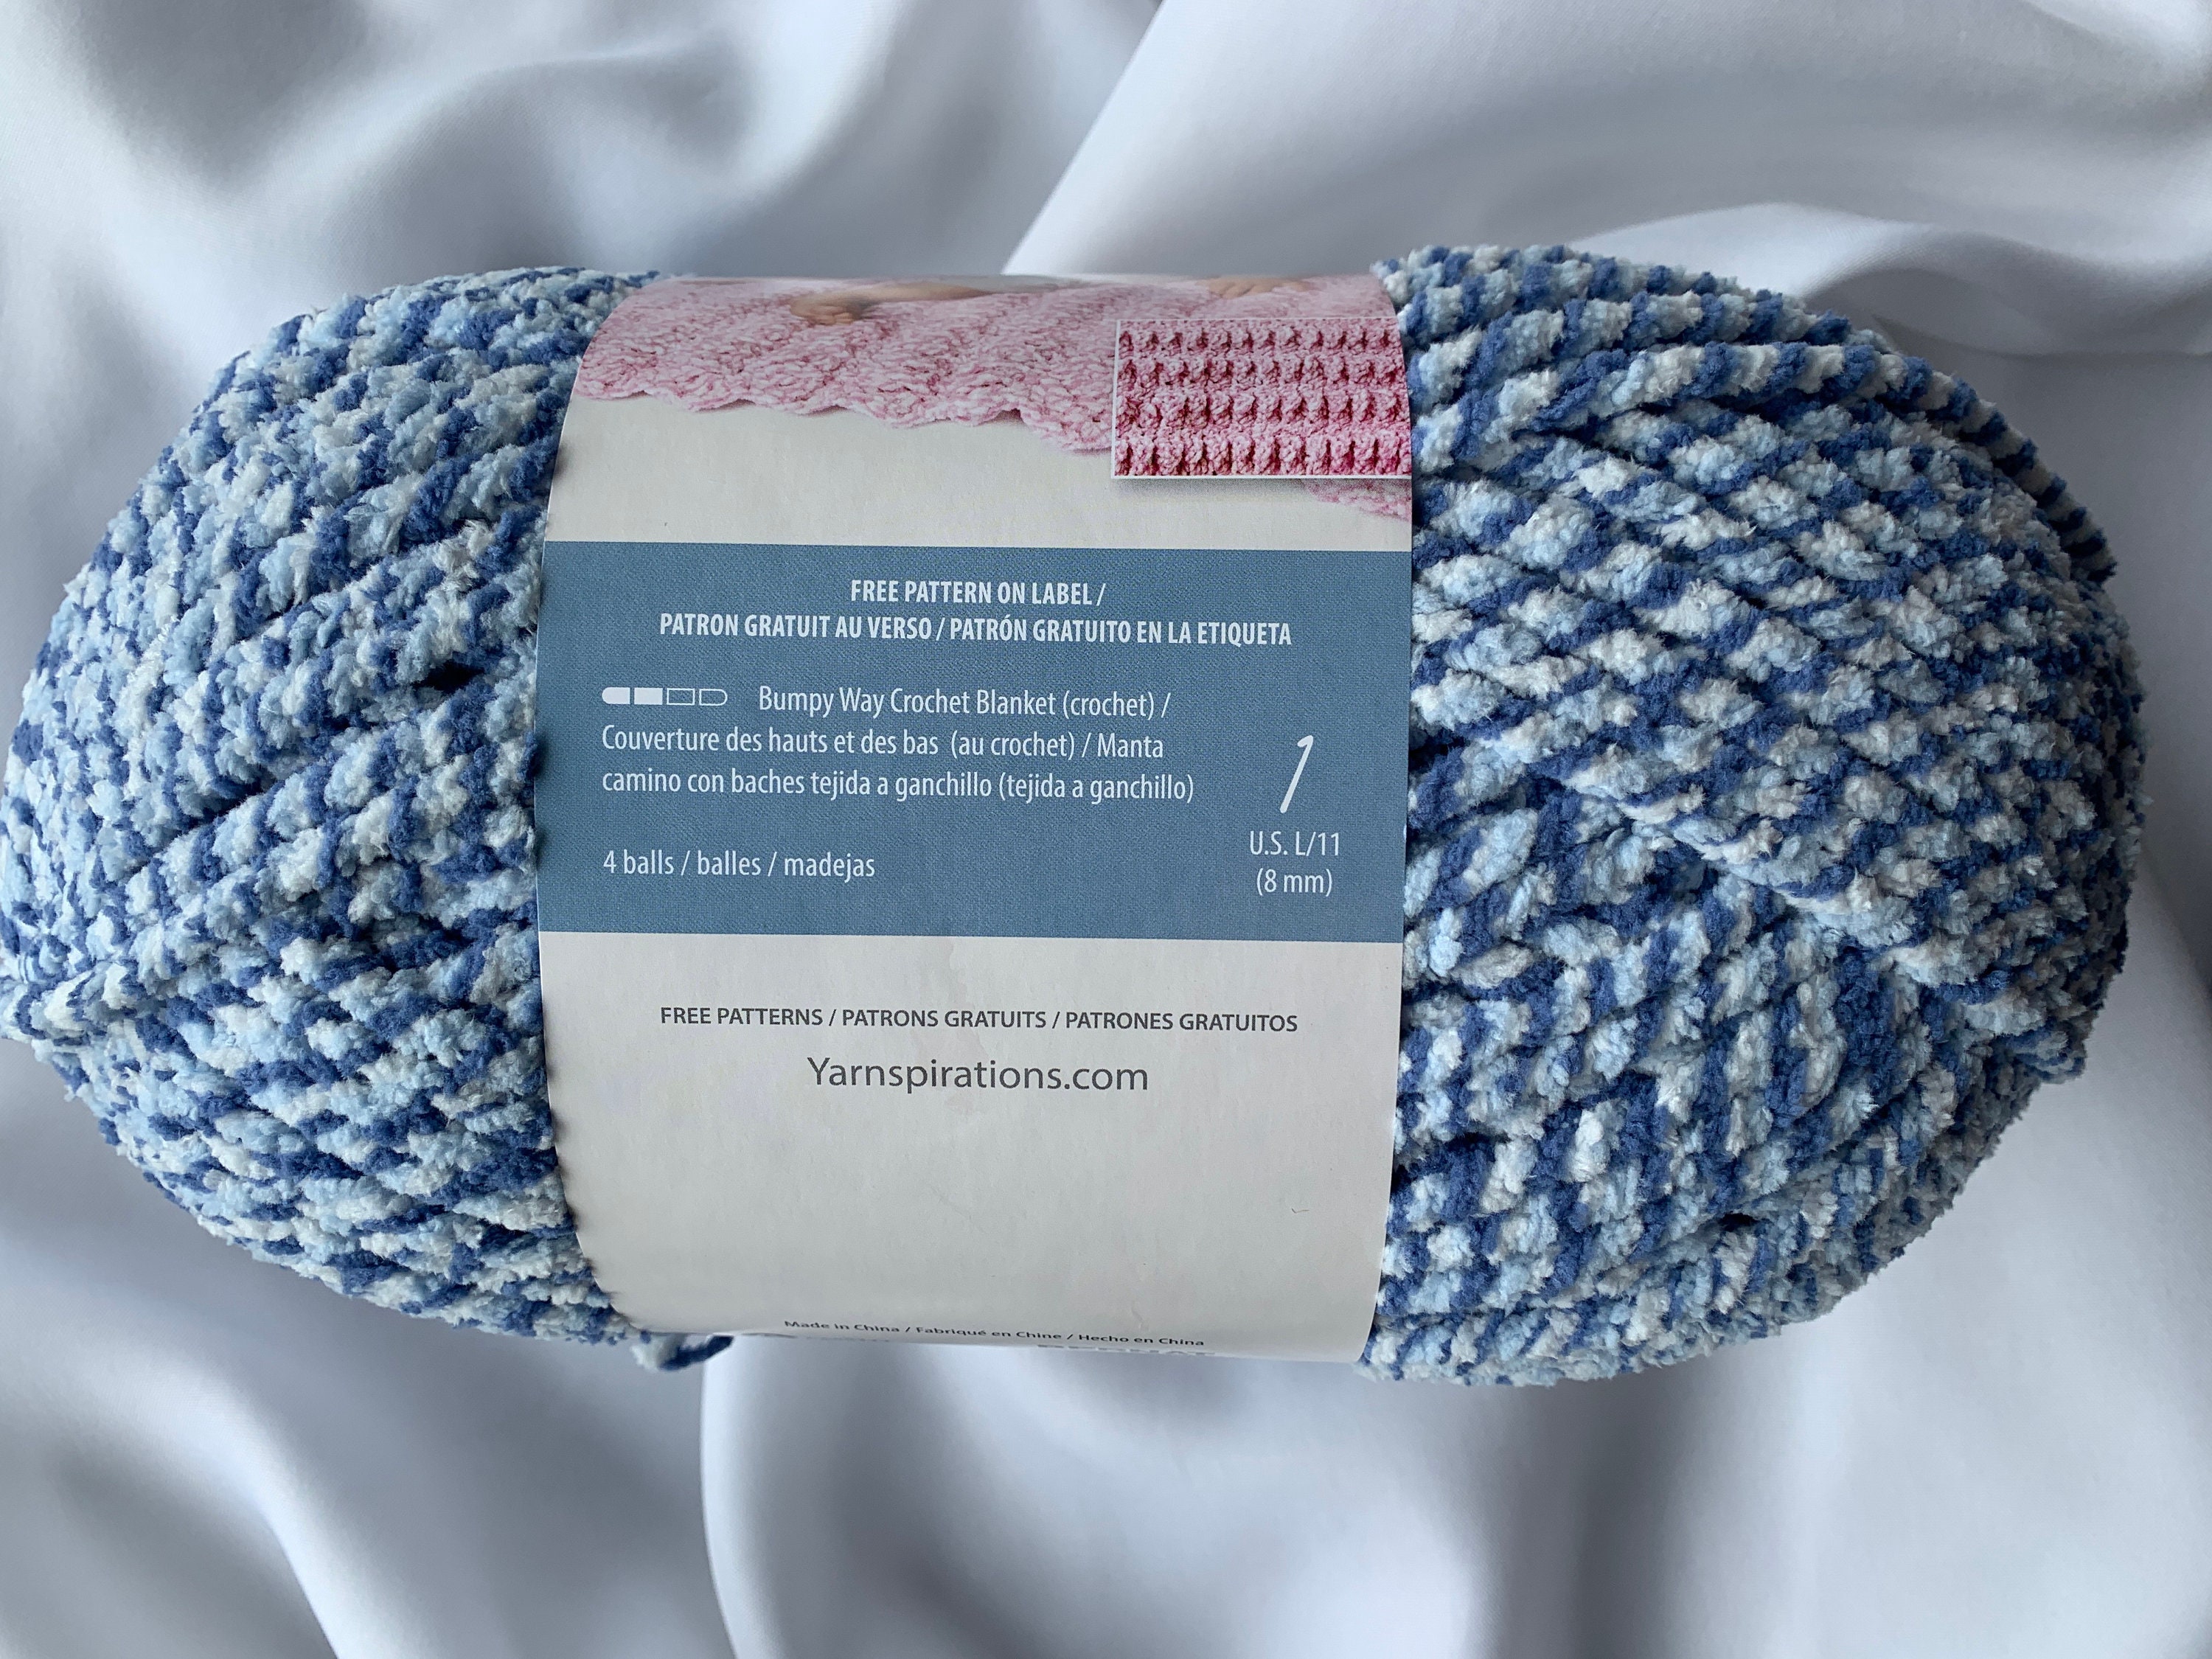 1 Skein Bernat Blanket Yarn Country Blue 2016-02-011 